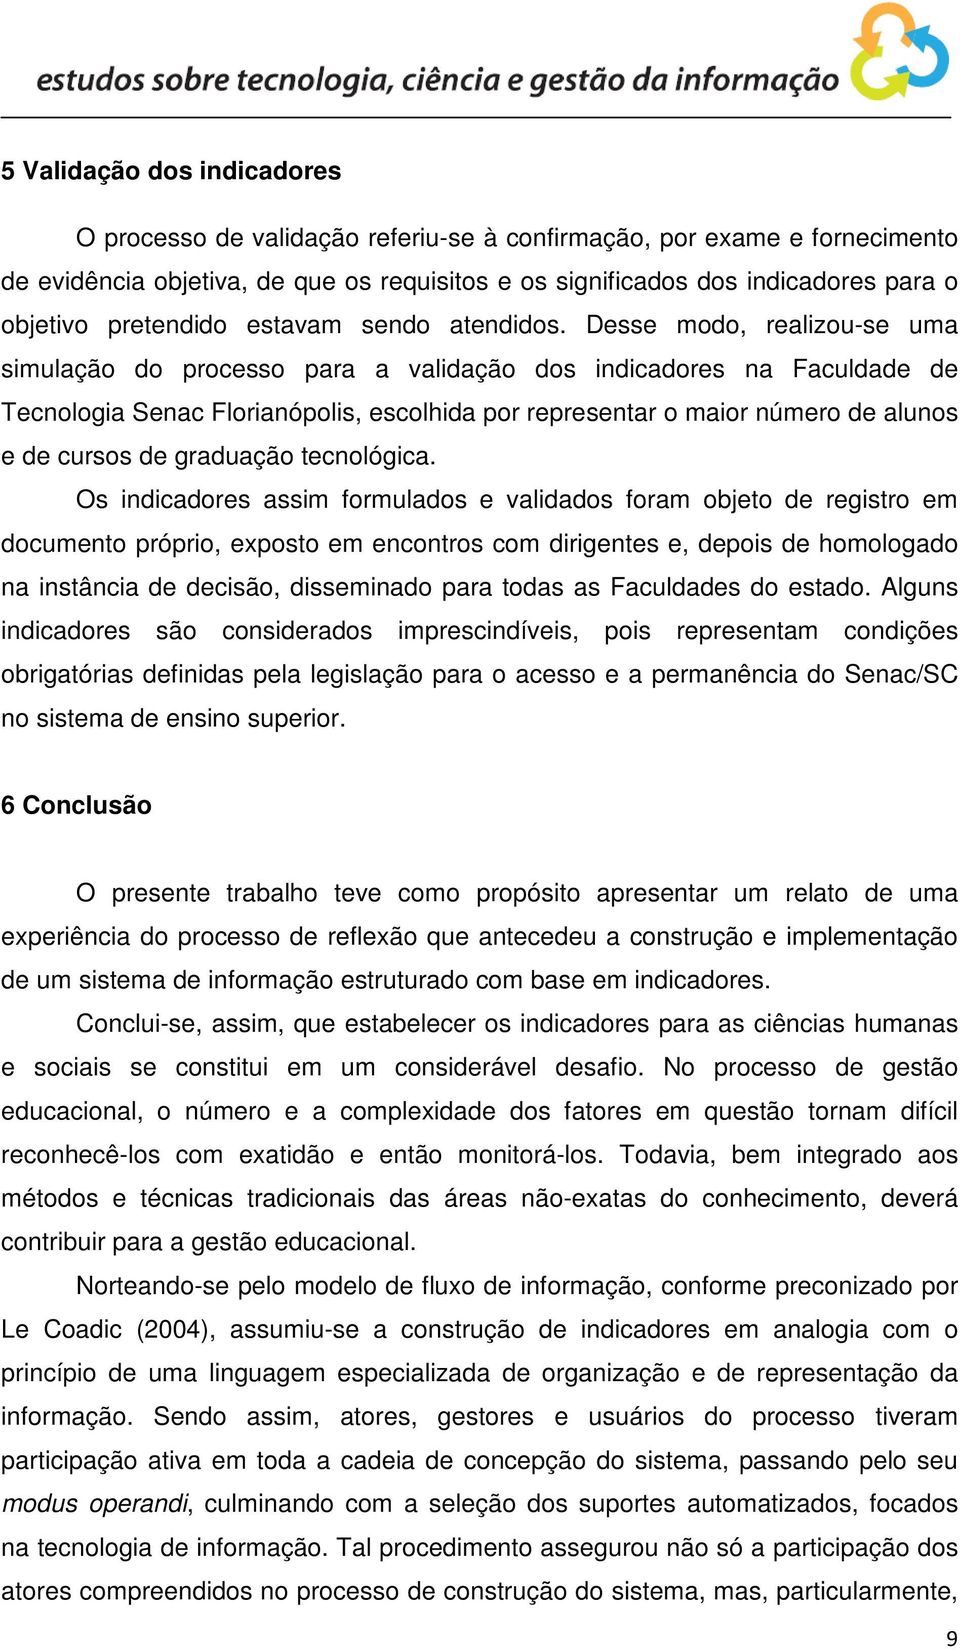 Desse modo, realizou-se uma simulação do processo para a validação dos indicadores na Faculdade de Tecnologia Senac Florianópolis, escolhida por representar o maior número de alunos e de cursos de